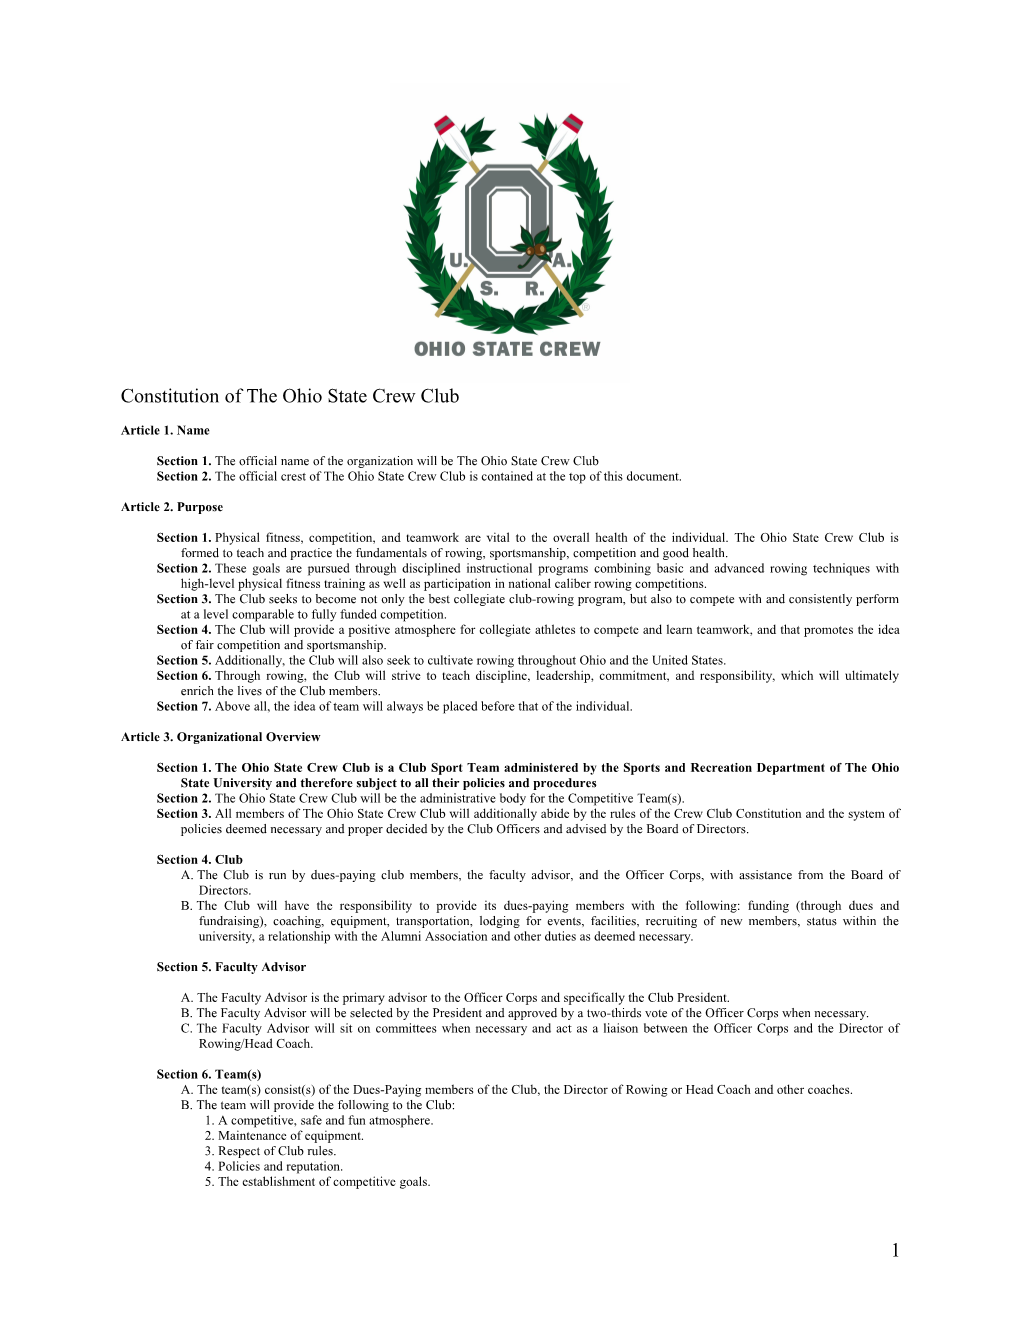 Constitution of the Ohio State Crew Club